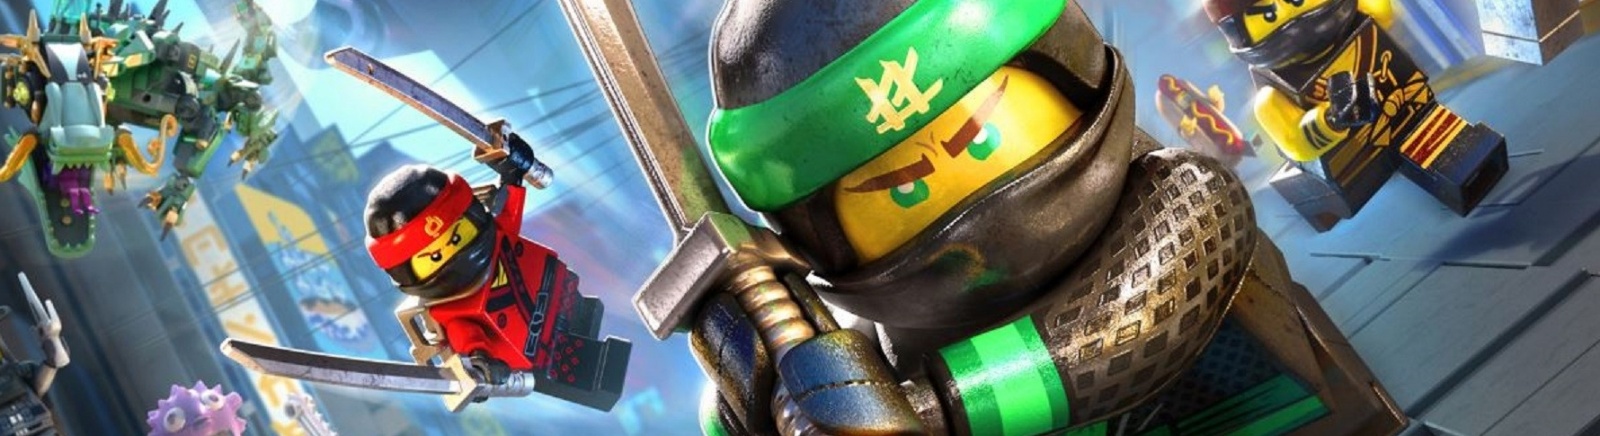 Дата выхода LEGO NINJAGO Movie Video Game  на PC, PS4 и Xbox One в России и во всем мире